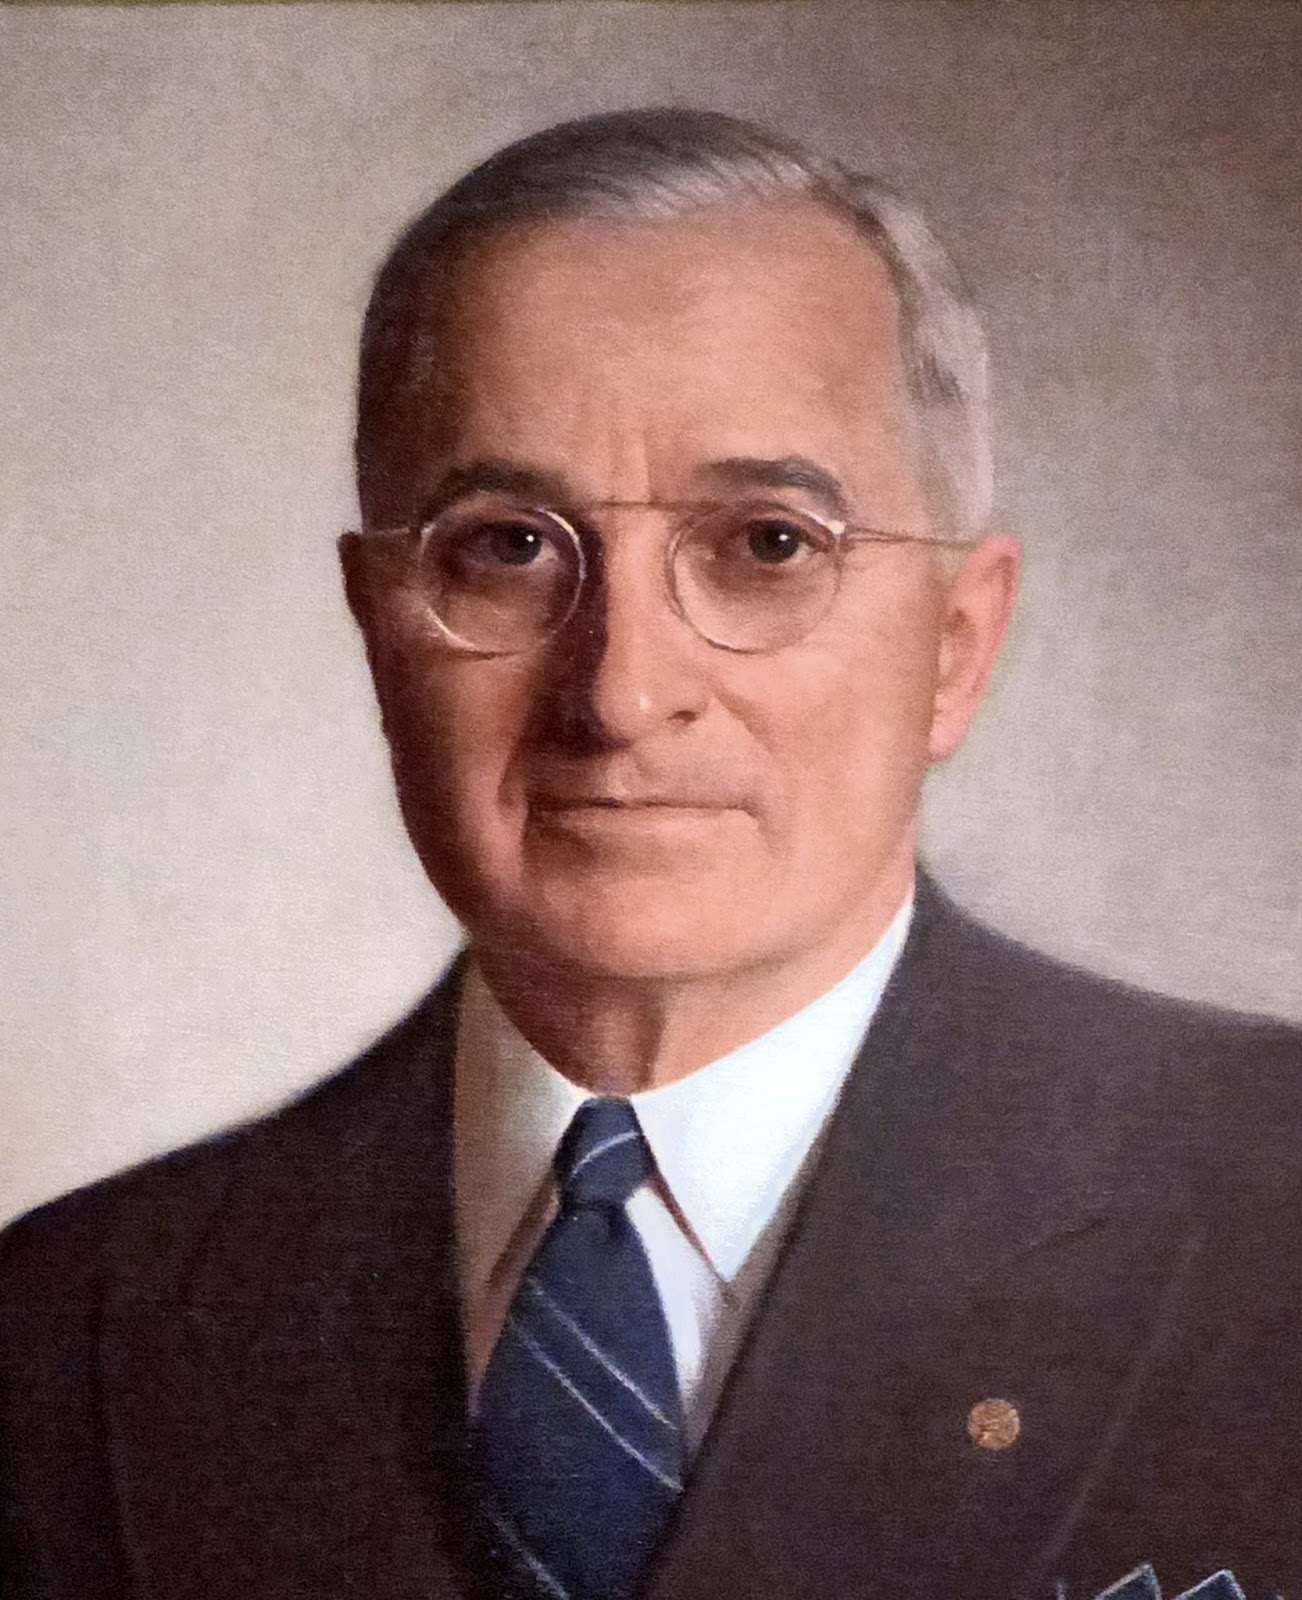 Harry S. Truman 1945-1953